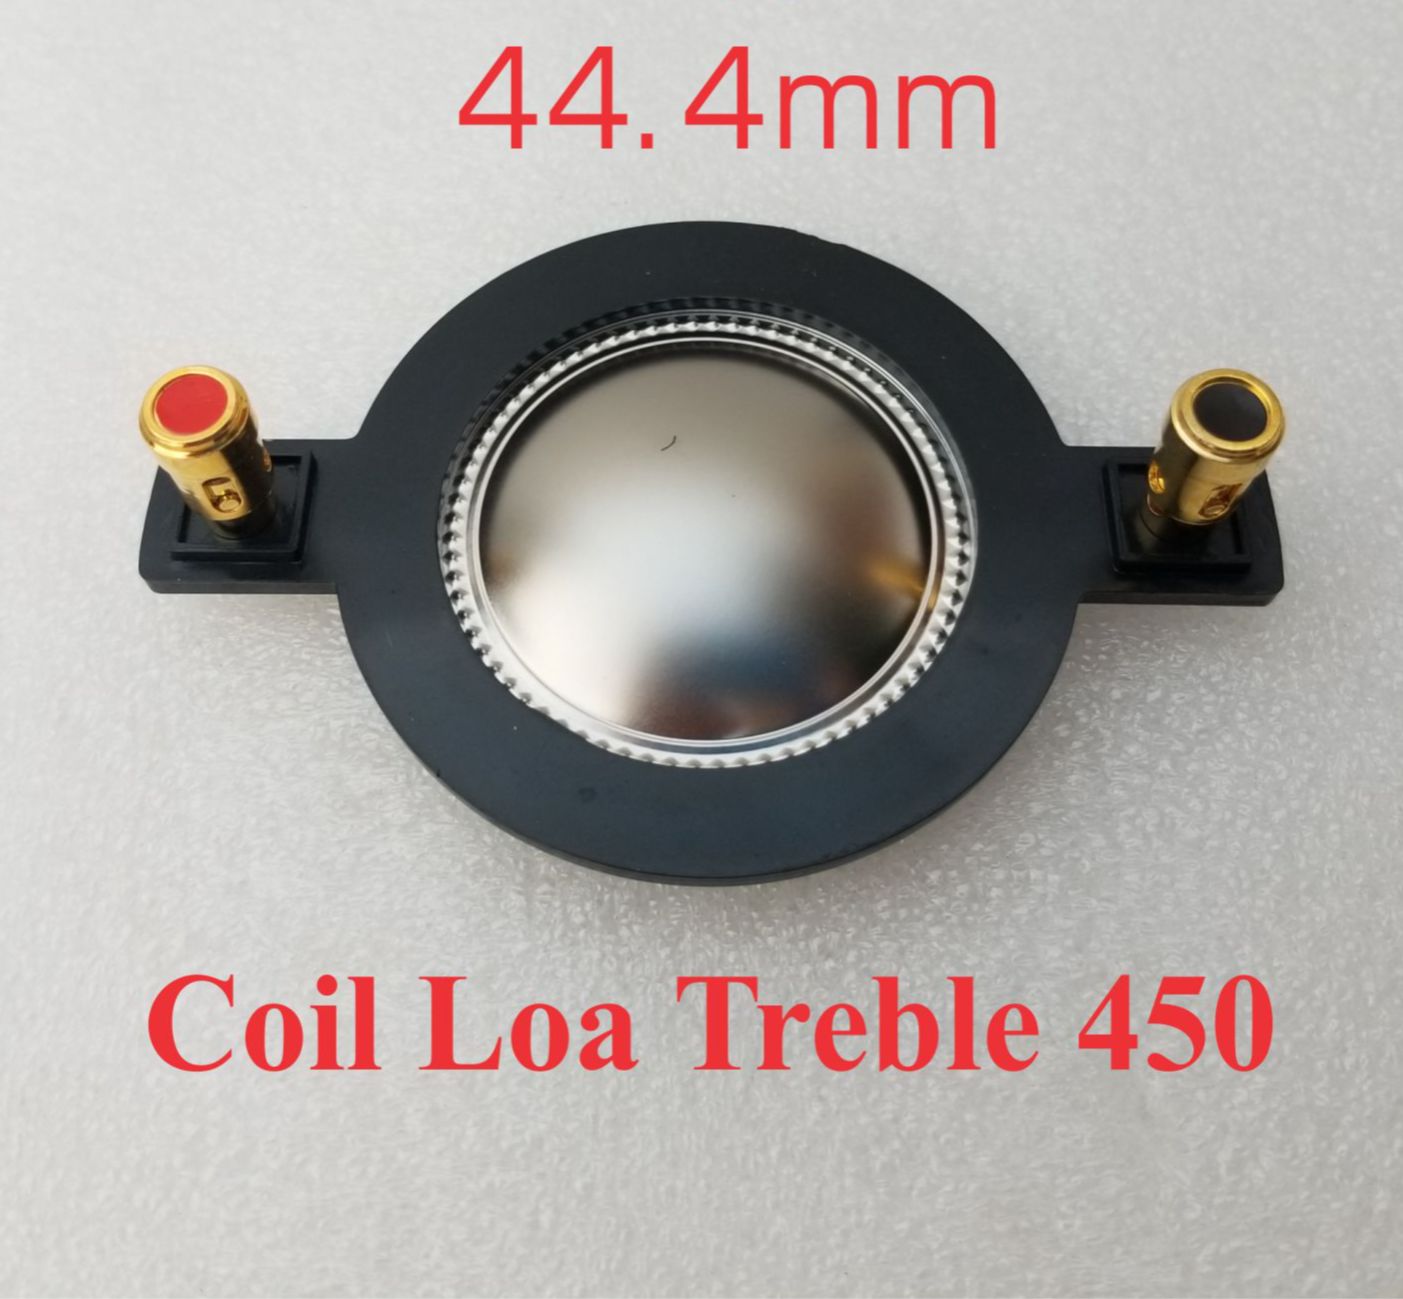 Coil 250, 350, 450 - Côn loa treble 250, 350, 450 kèn màng Titan 25.5mm, 34.4mm, 44.4mm